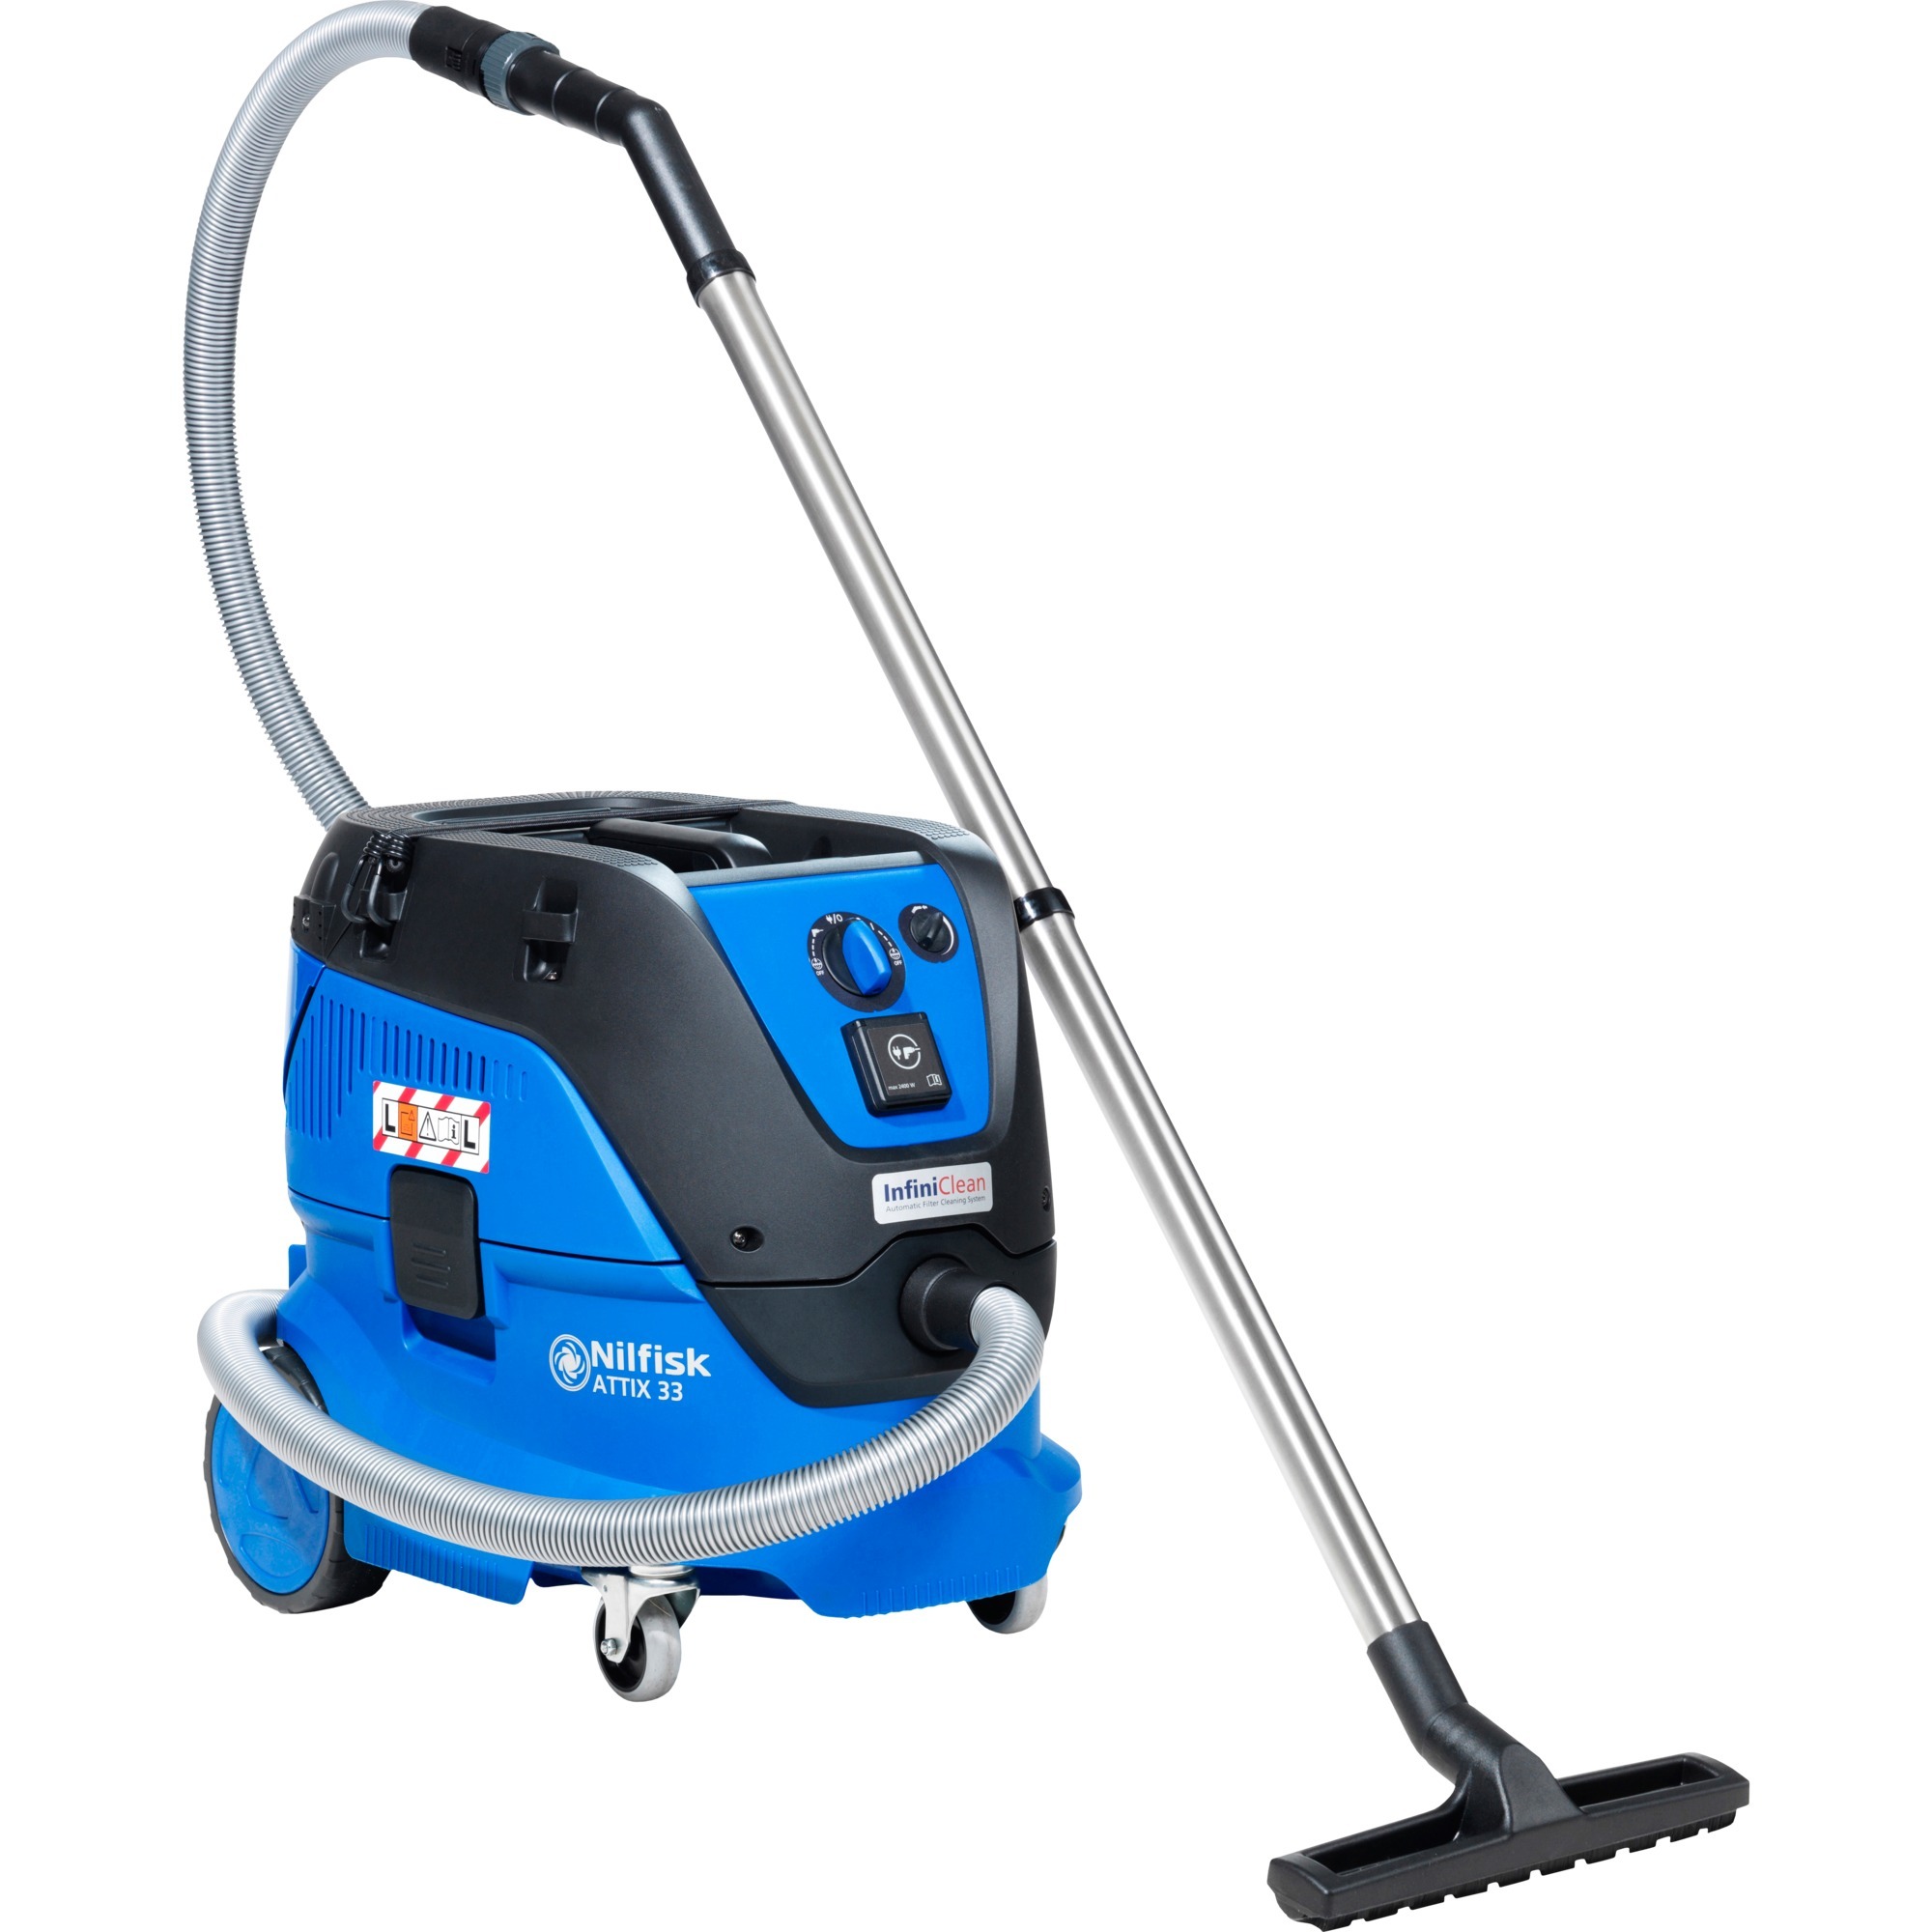 107412103, Wet/dry vacuum cleaner